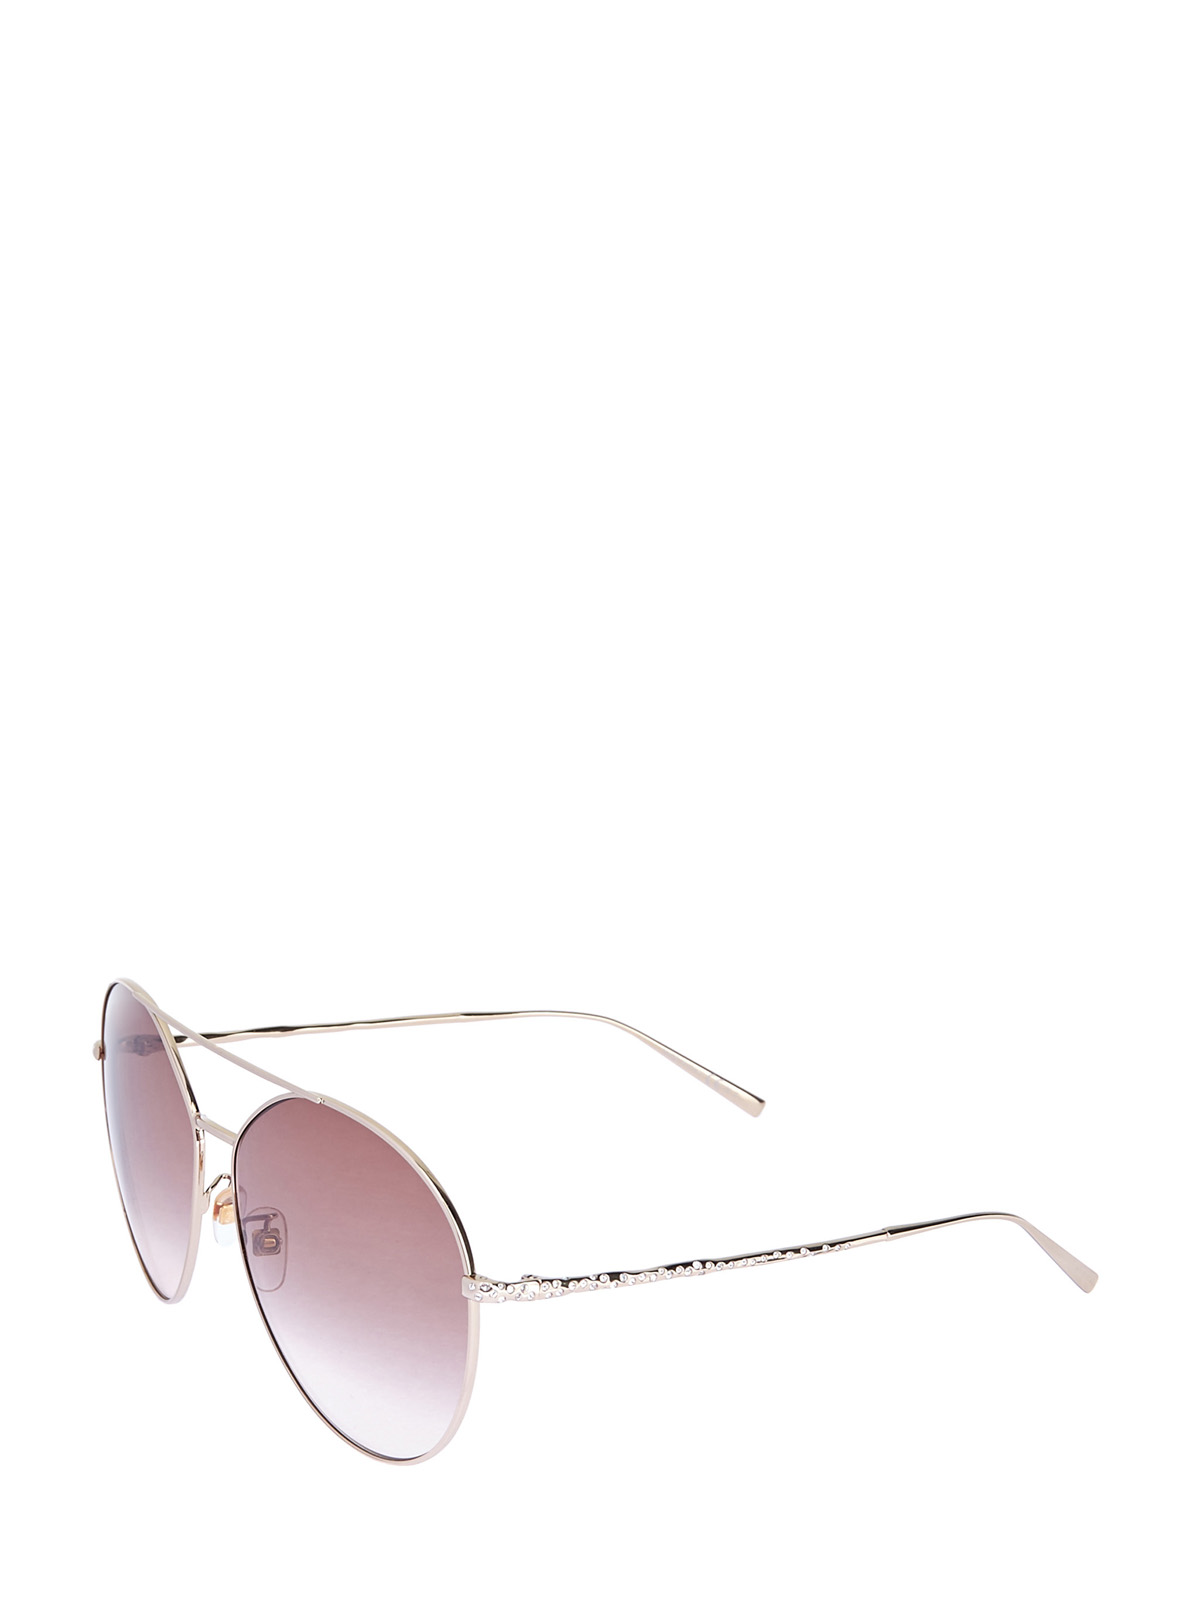 Очки-авиаторы в тонкой оправе с отделкой стразами GIVENCHY (sunglasses), цвет розовый, размер S;M;L - фото 2